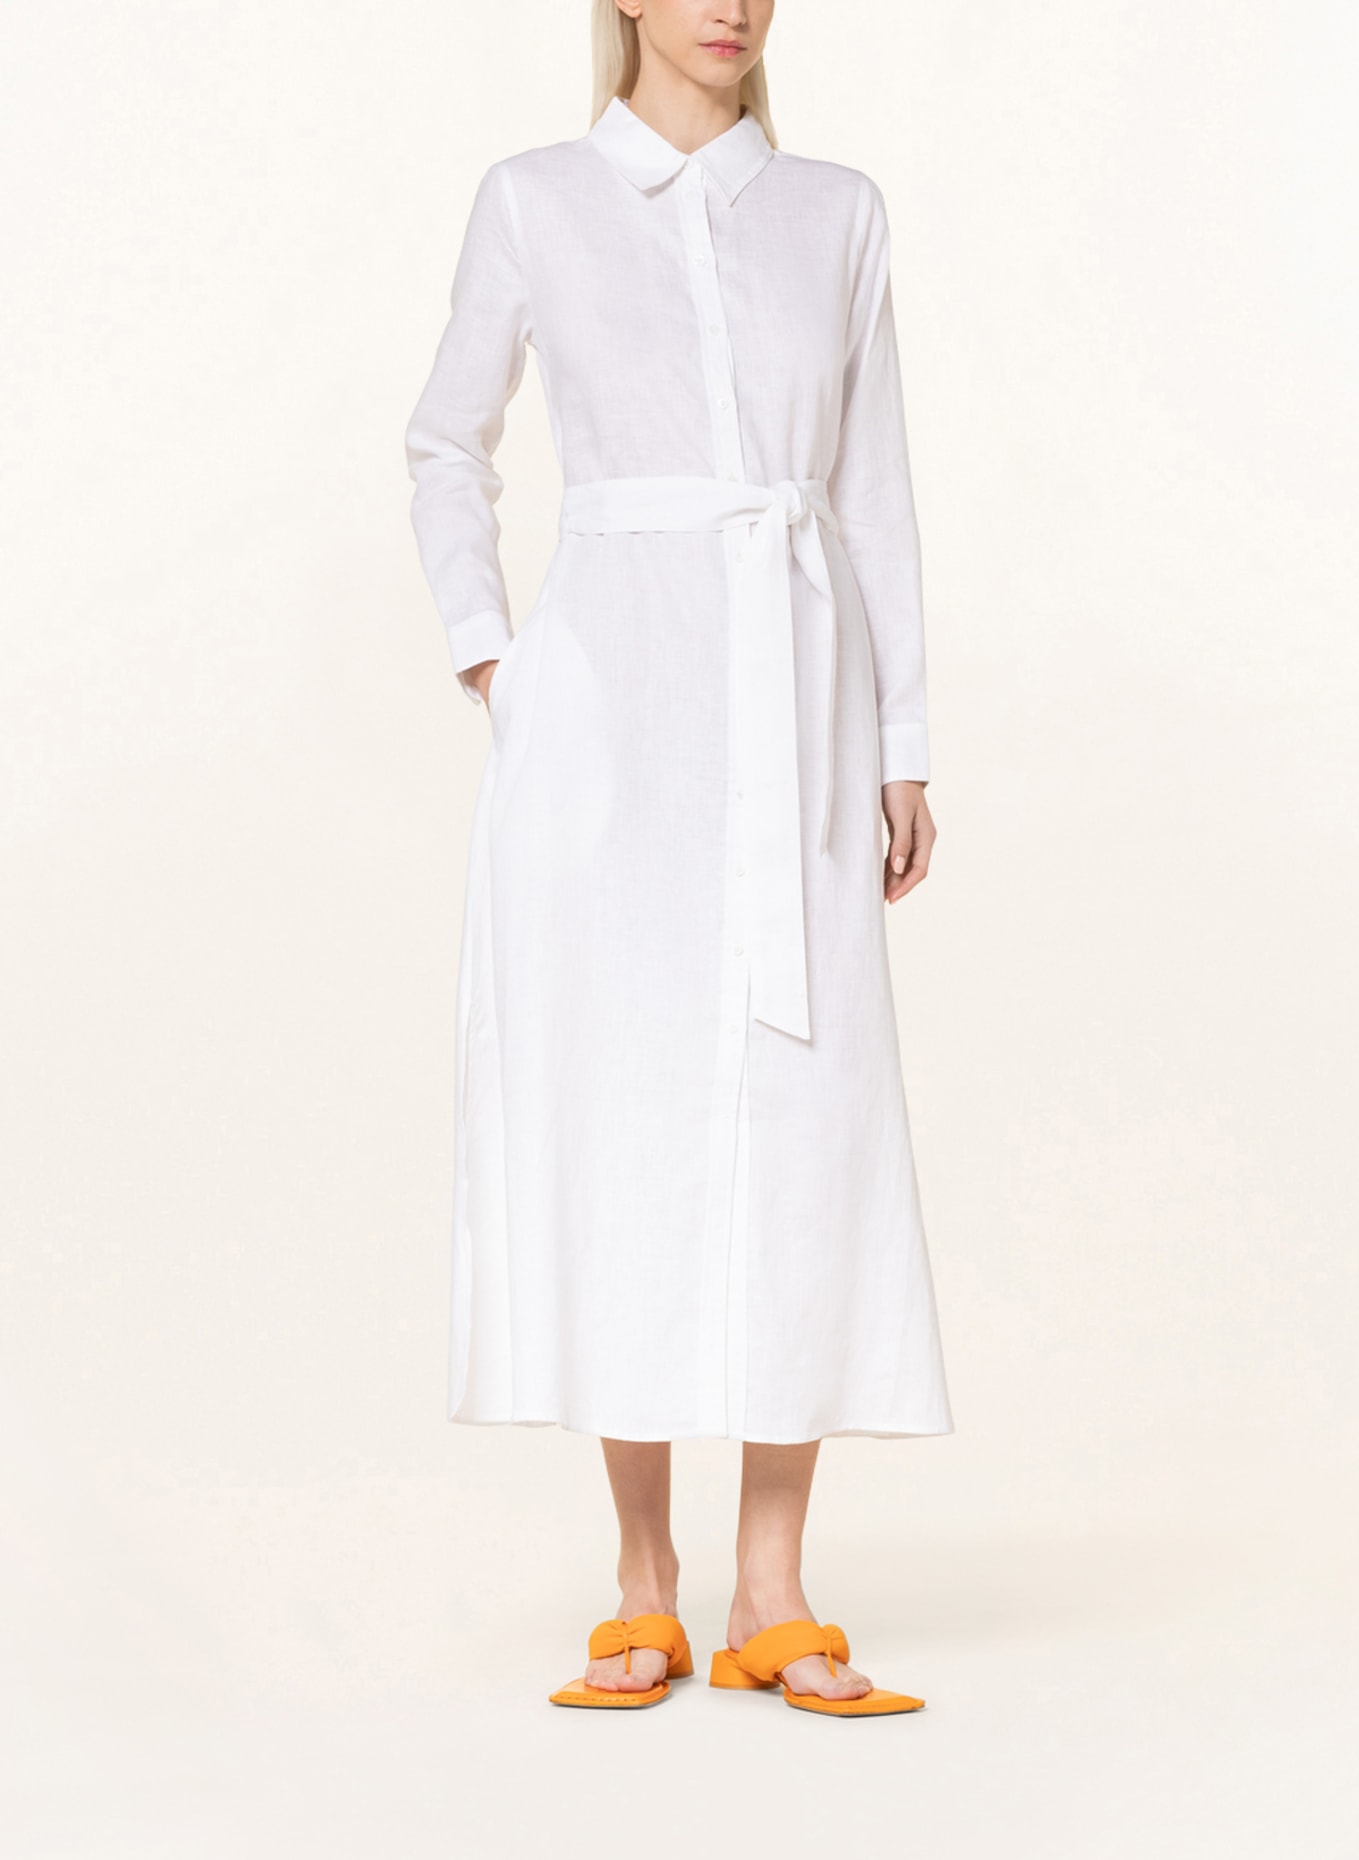 MRS & HUGS Shirt dress in linen, Color: WHITE (Image 2)